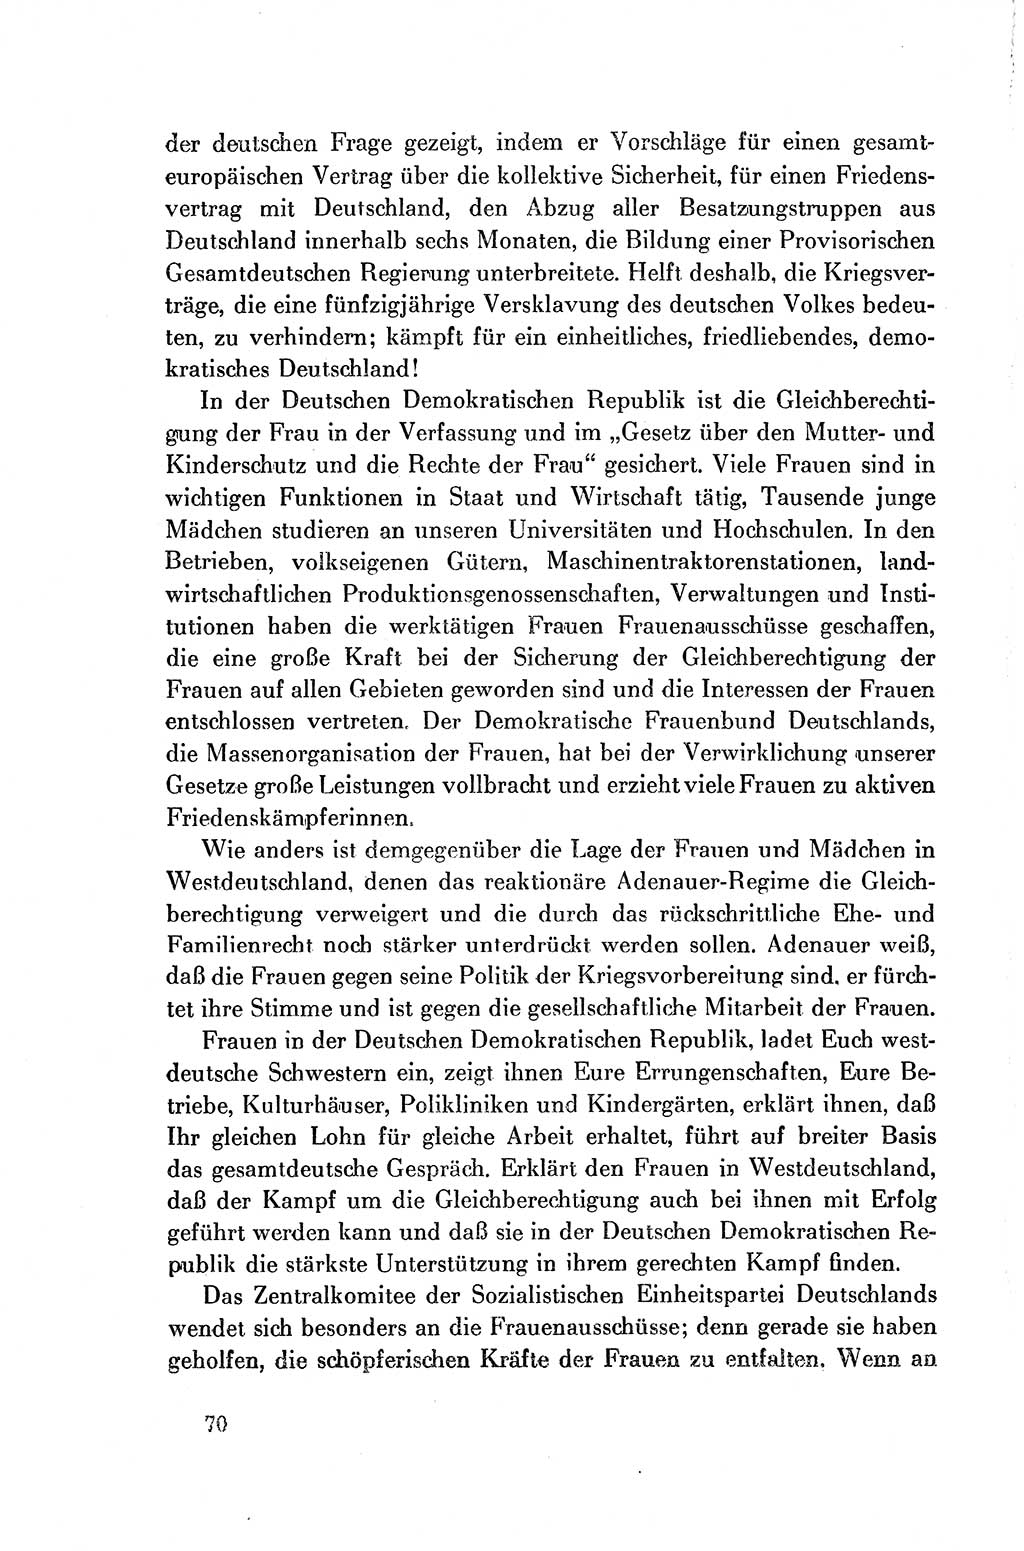 Dokumente der Sozialistischen Einheitspartei Deutschlands (SED) [Deutsche Demokratische Republik (DDR)] 1954-1955, Seite 70 (Dok. SED DDR 1954-1955, S. 70)